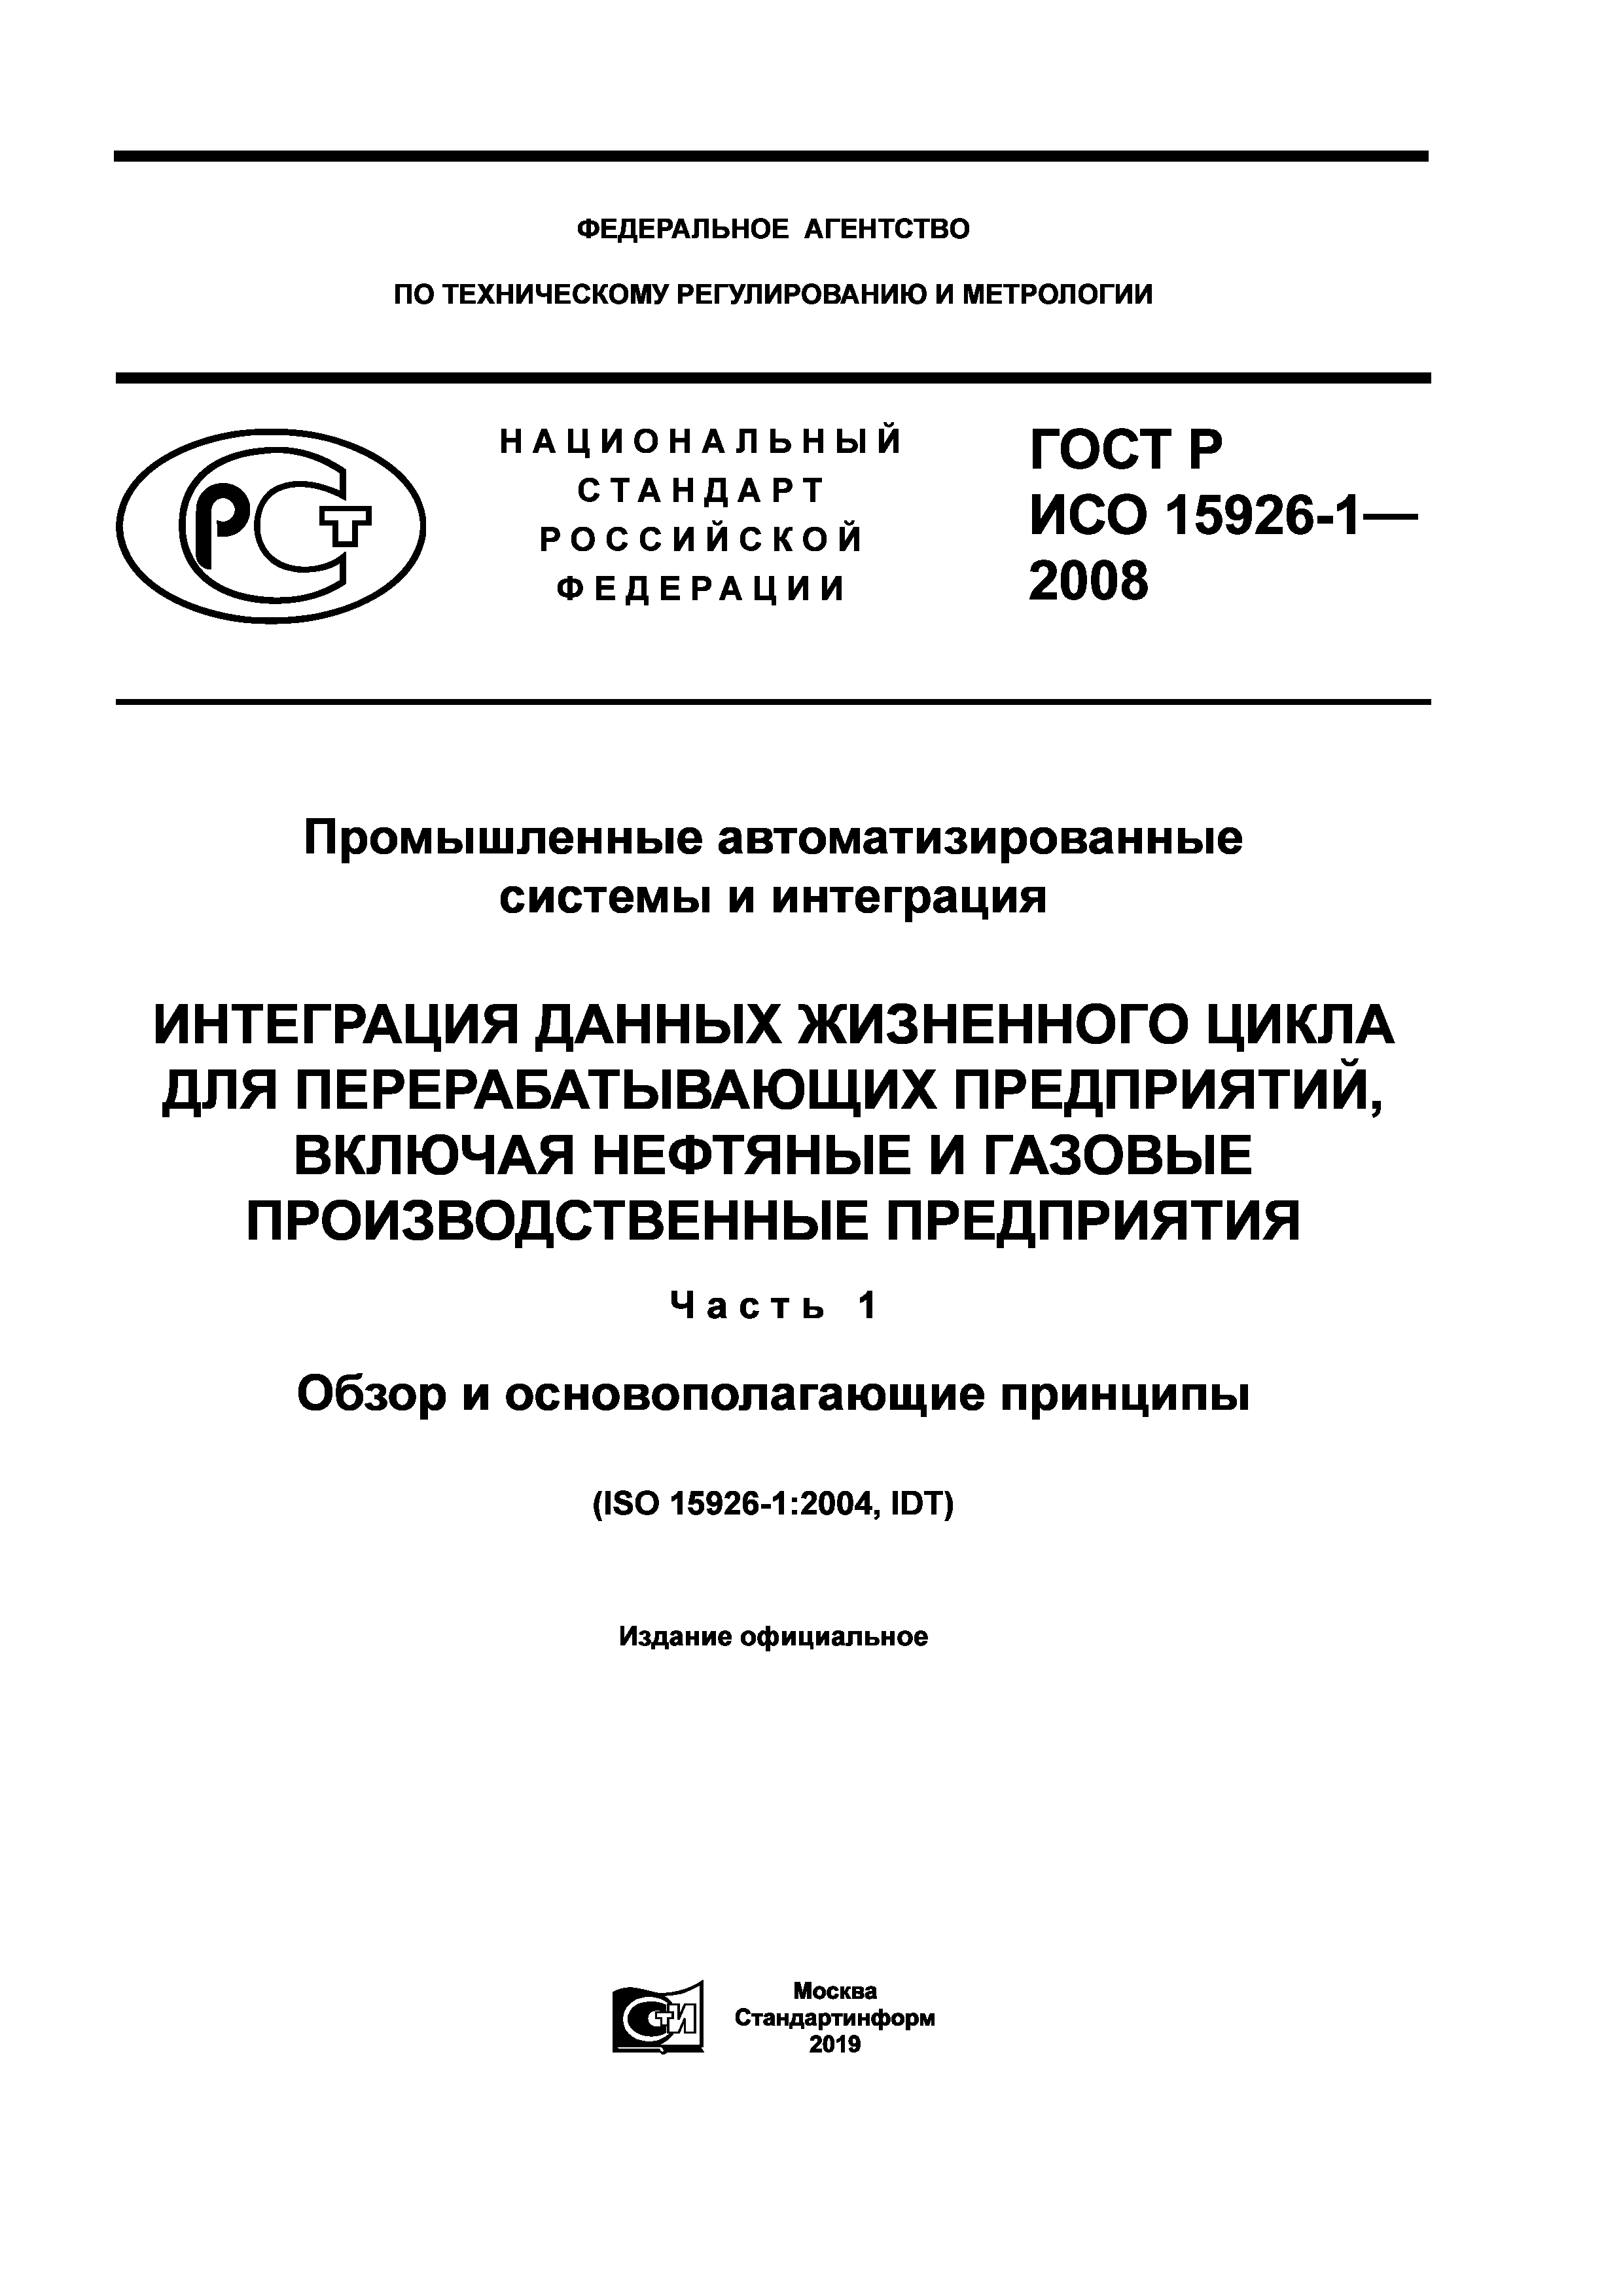 ГОСТ Р ИСО 15926-1-2008